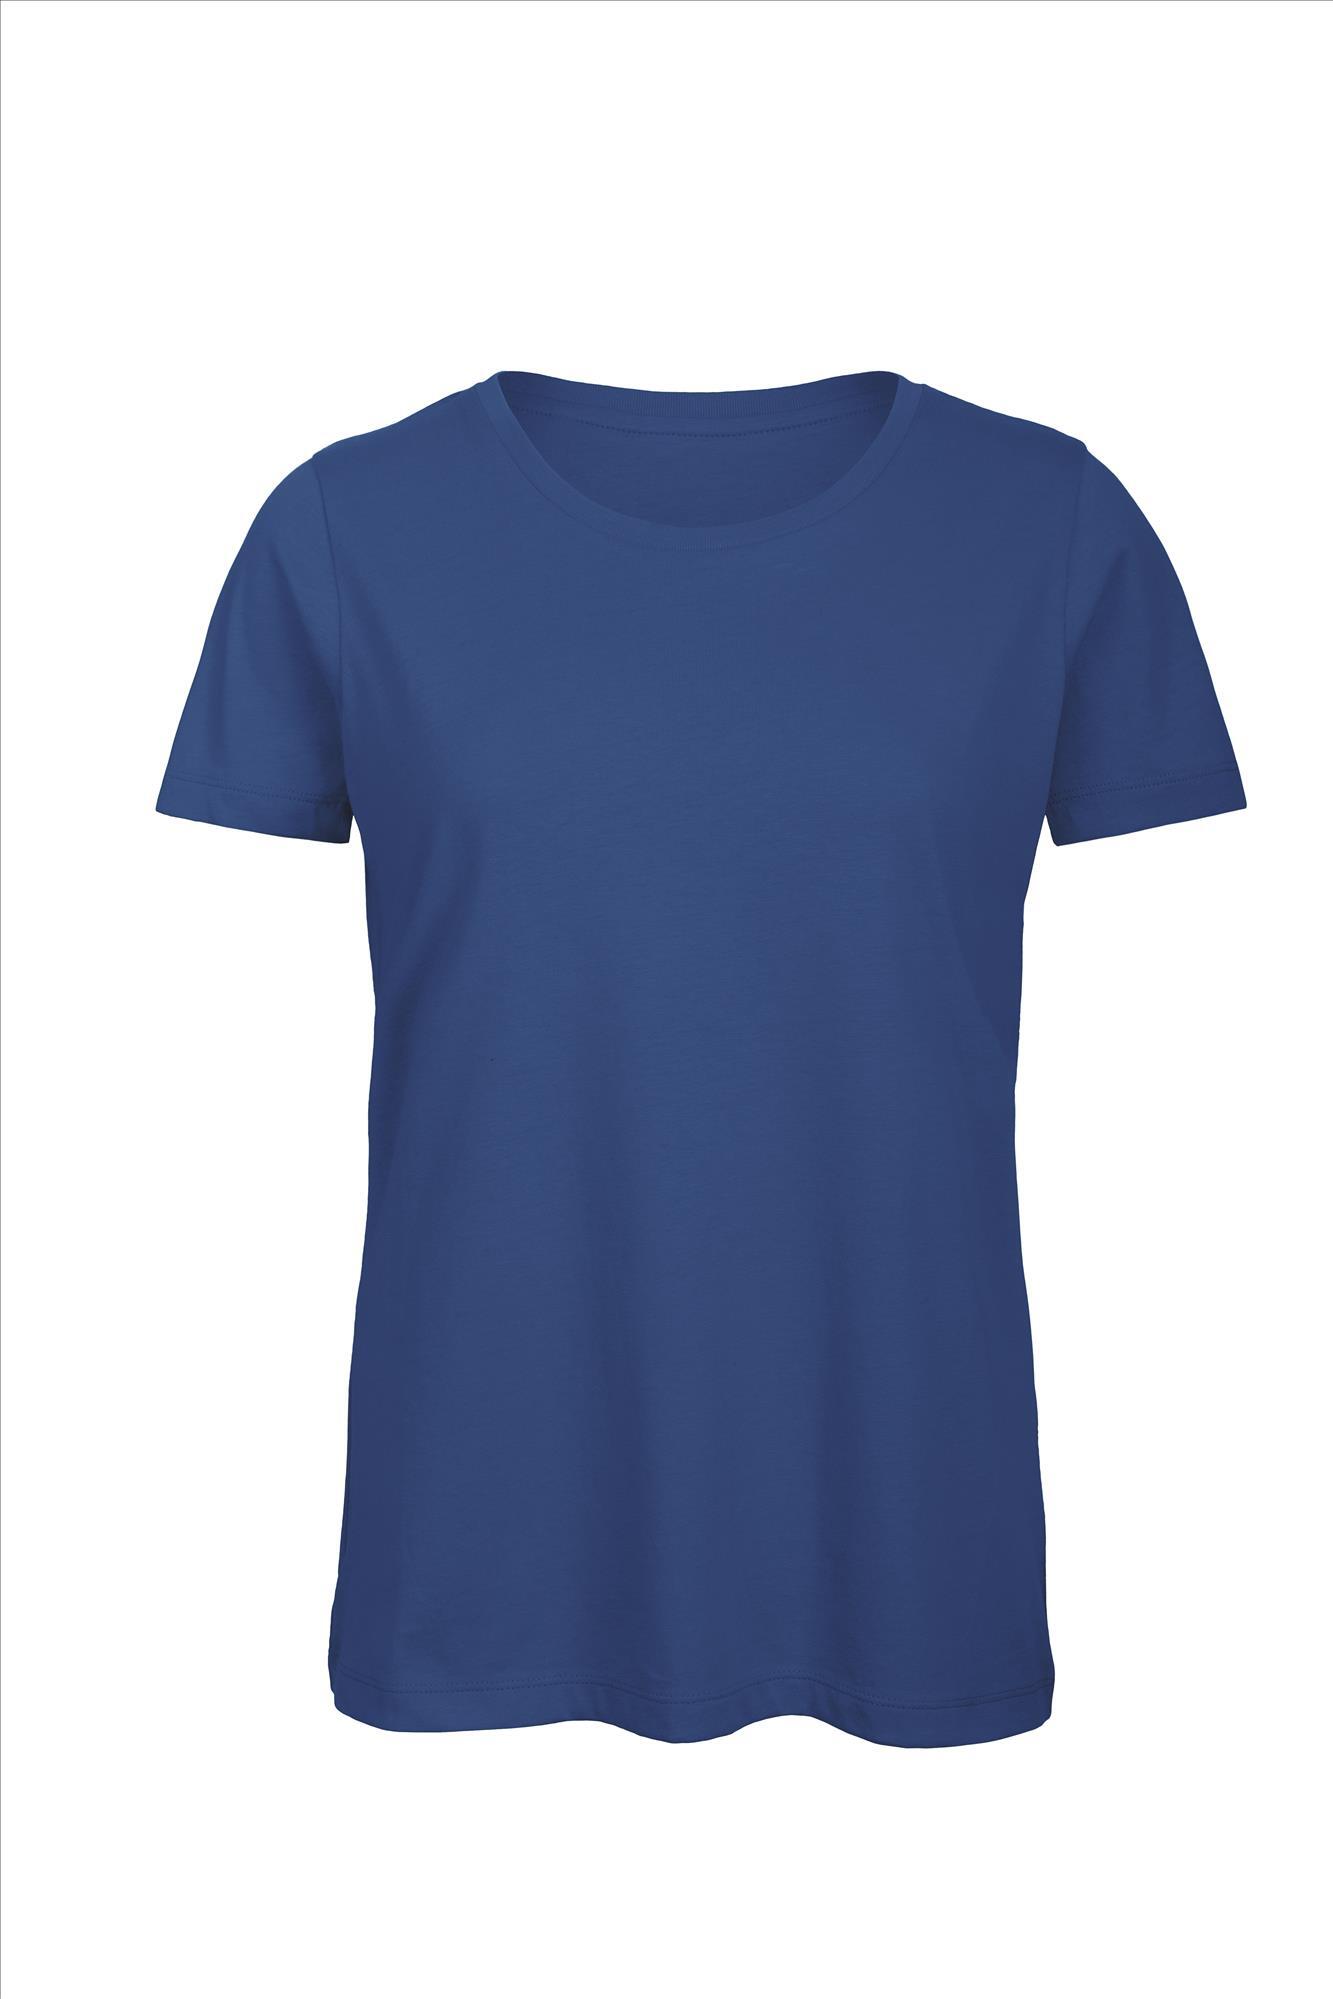 Biologische dames T-shirt royal blauw te personaliseren bedrukbaar